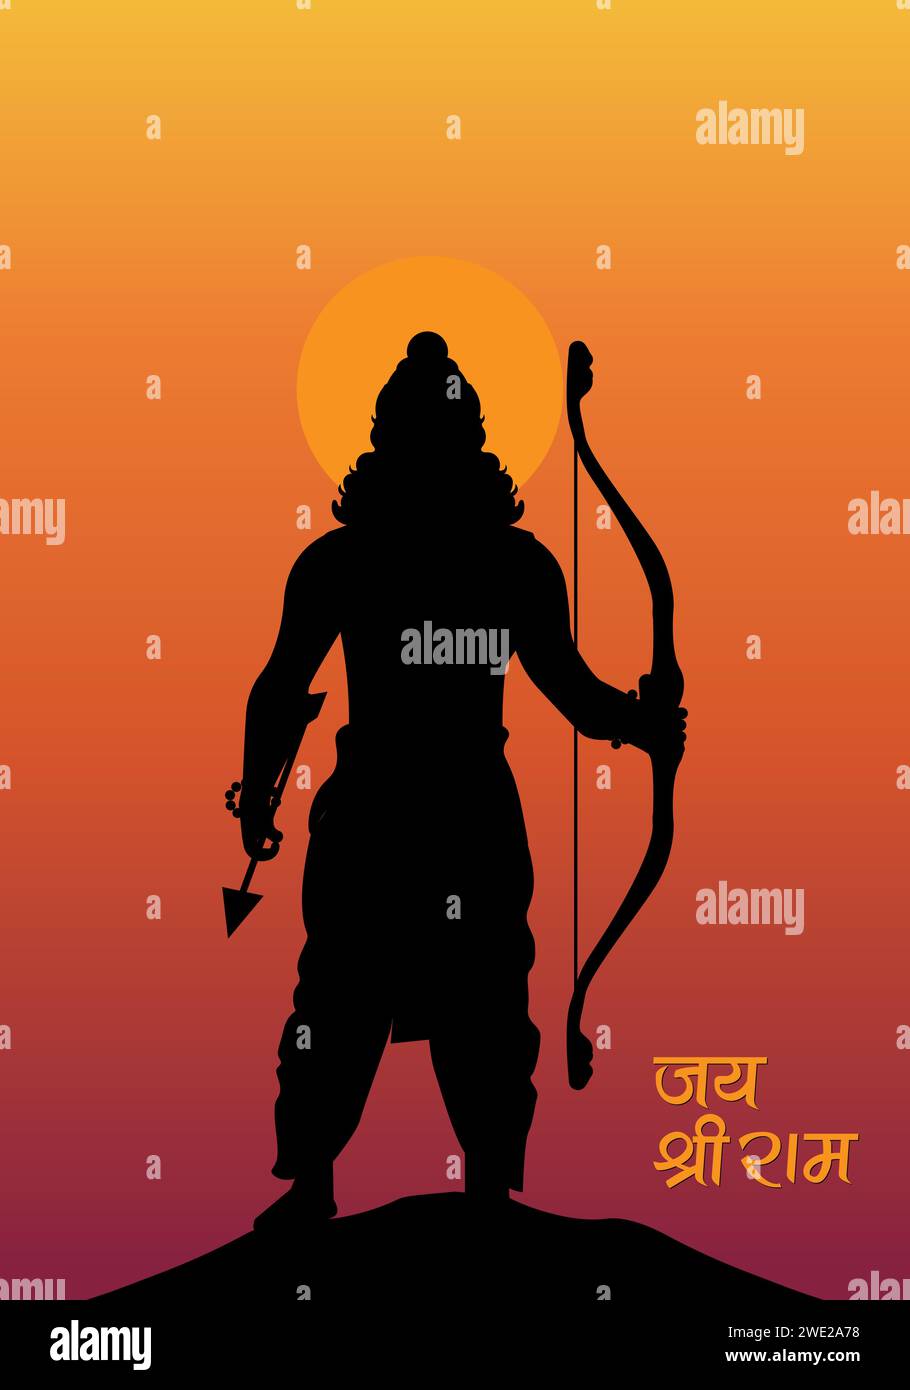 lord Shri Ram Shadow with Jai Shree Ram text vector Stock Vector